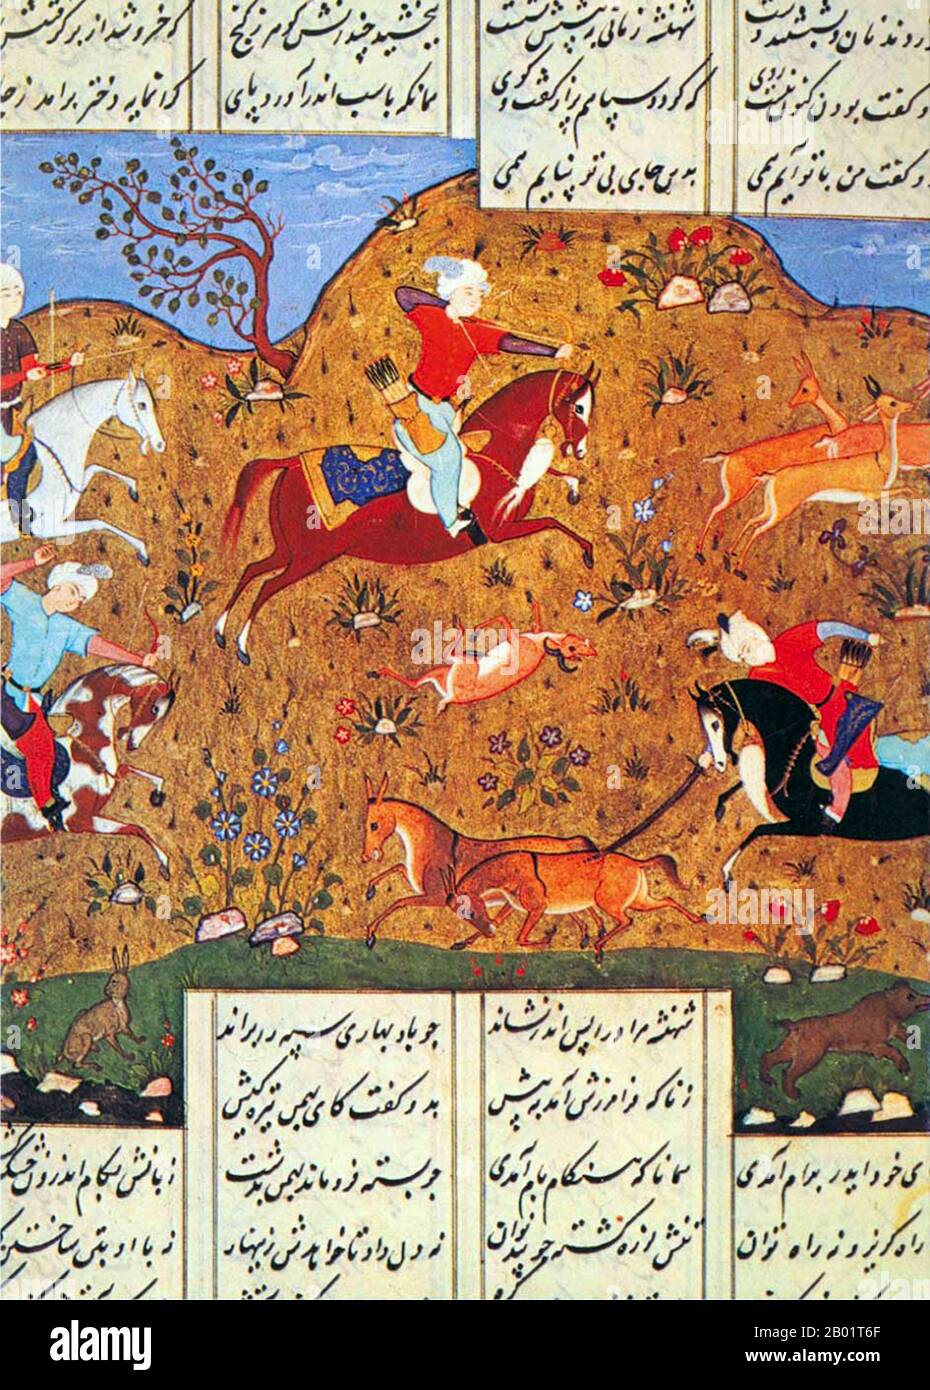 Iran/Persien: Eine Jagdszene. Safawiden-Miniaturmalerei, 16.-17. Jahrhundert. Eine persische Miniatur ist ein kleines Gemälde auf Papier, sei es eine Buchillustration oder ein separates Kunstwerk, das in einem Album mit solchen Werken aufbewahrt werden soll, das Muraqqa genannt wird. Die Techniken sind weitgehend mit den westlichen und byzantinischen Traditionen von Miniaturen in beleuchteten Manuskripten vergleichbar. Obwohl die persische Tradition der Wandmalerei ebenso weit verbreitet ist, ist die Überlebensrate und der Erhaltungszustand der Miniaturen besser, und Miniaturen sind die bekannteste Form der persischen Malerei im Westen. Stockfoto